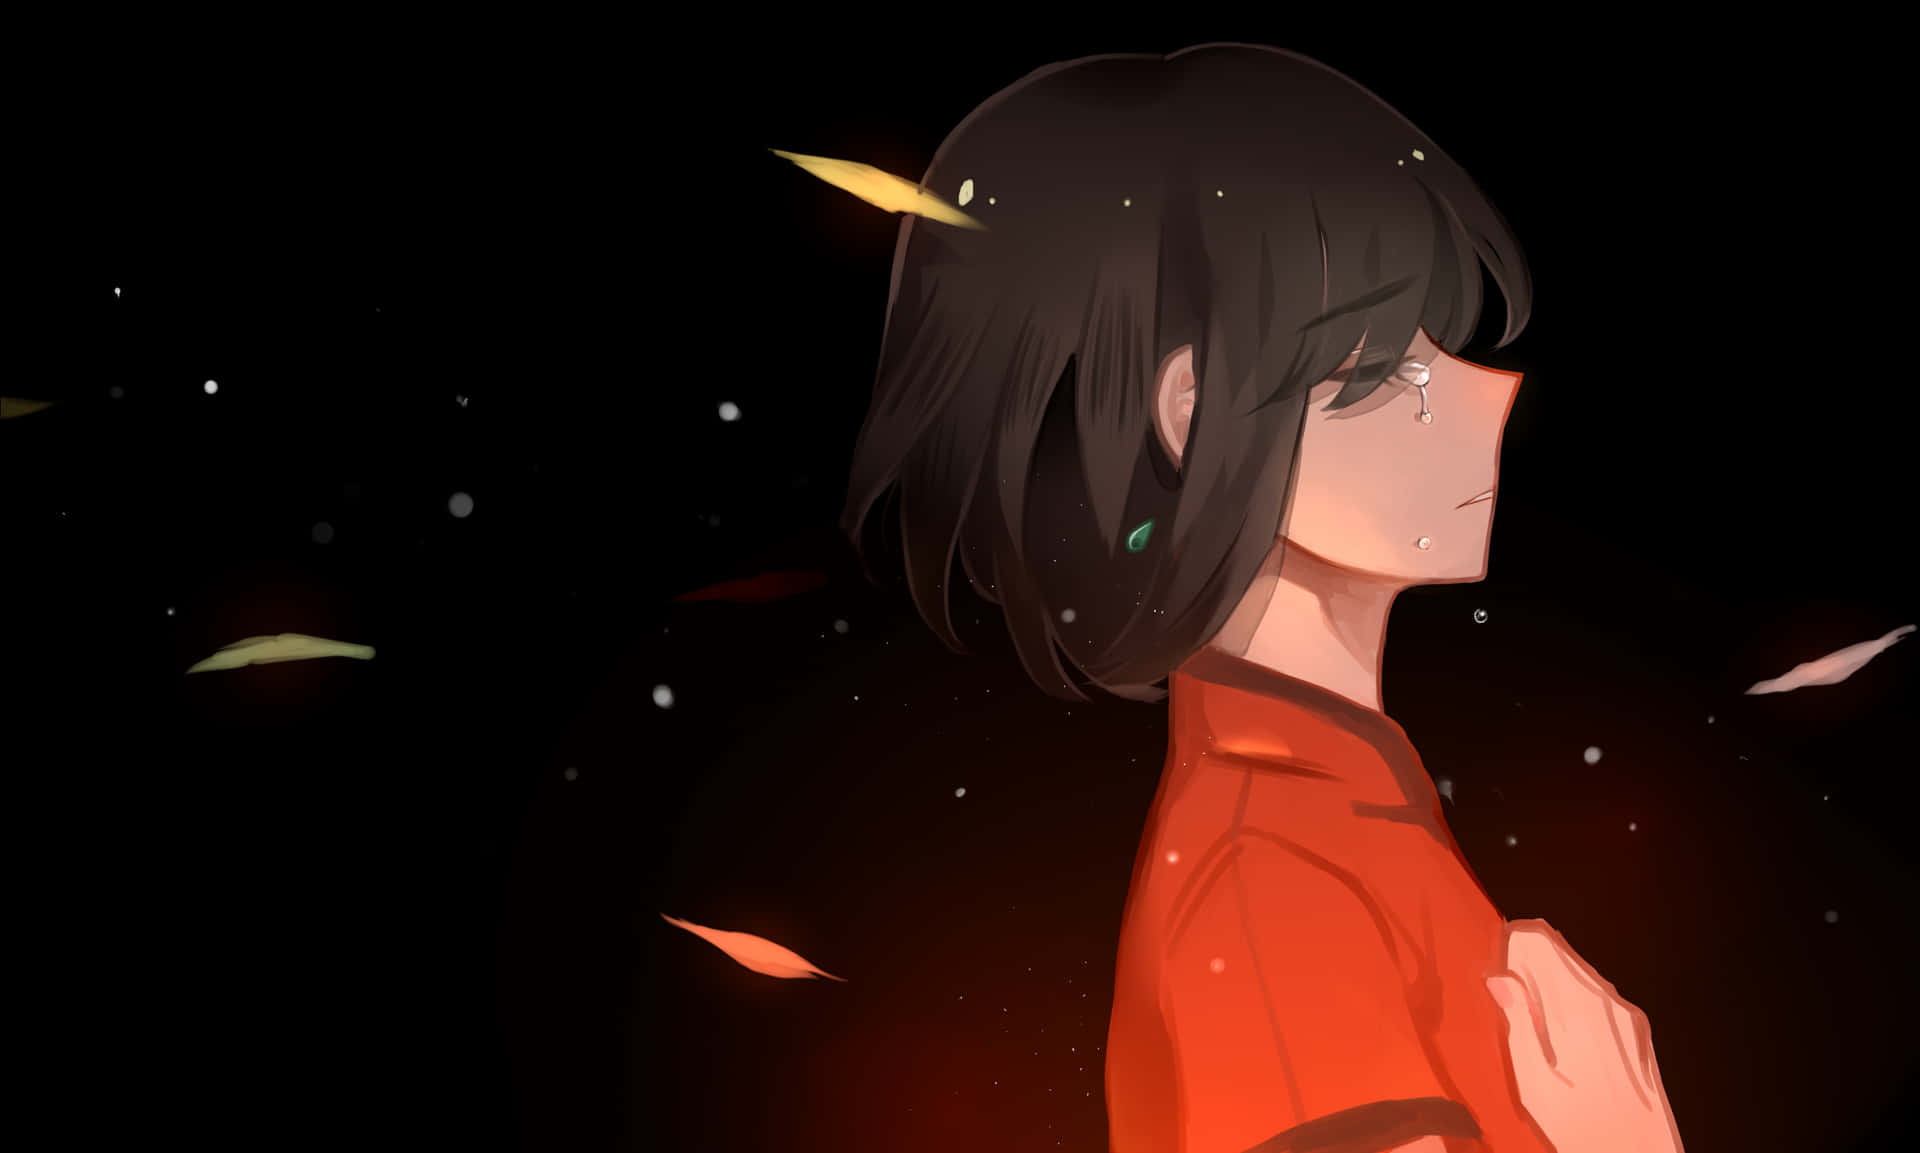 Melancholic Anime Girl Under Starry Sky Wallpaper